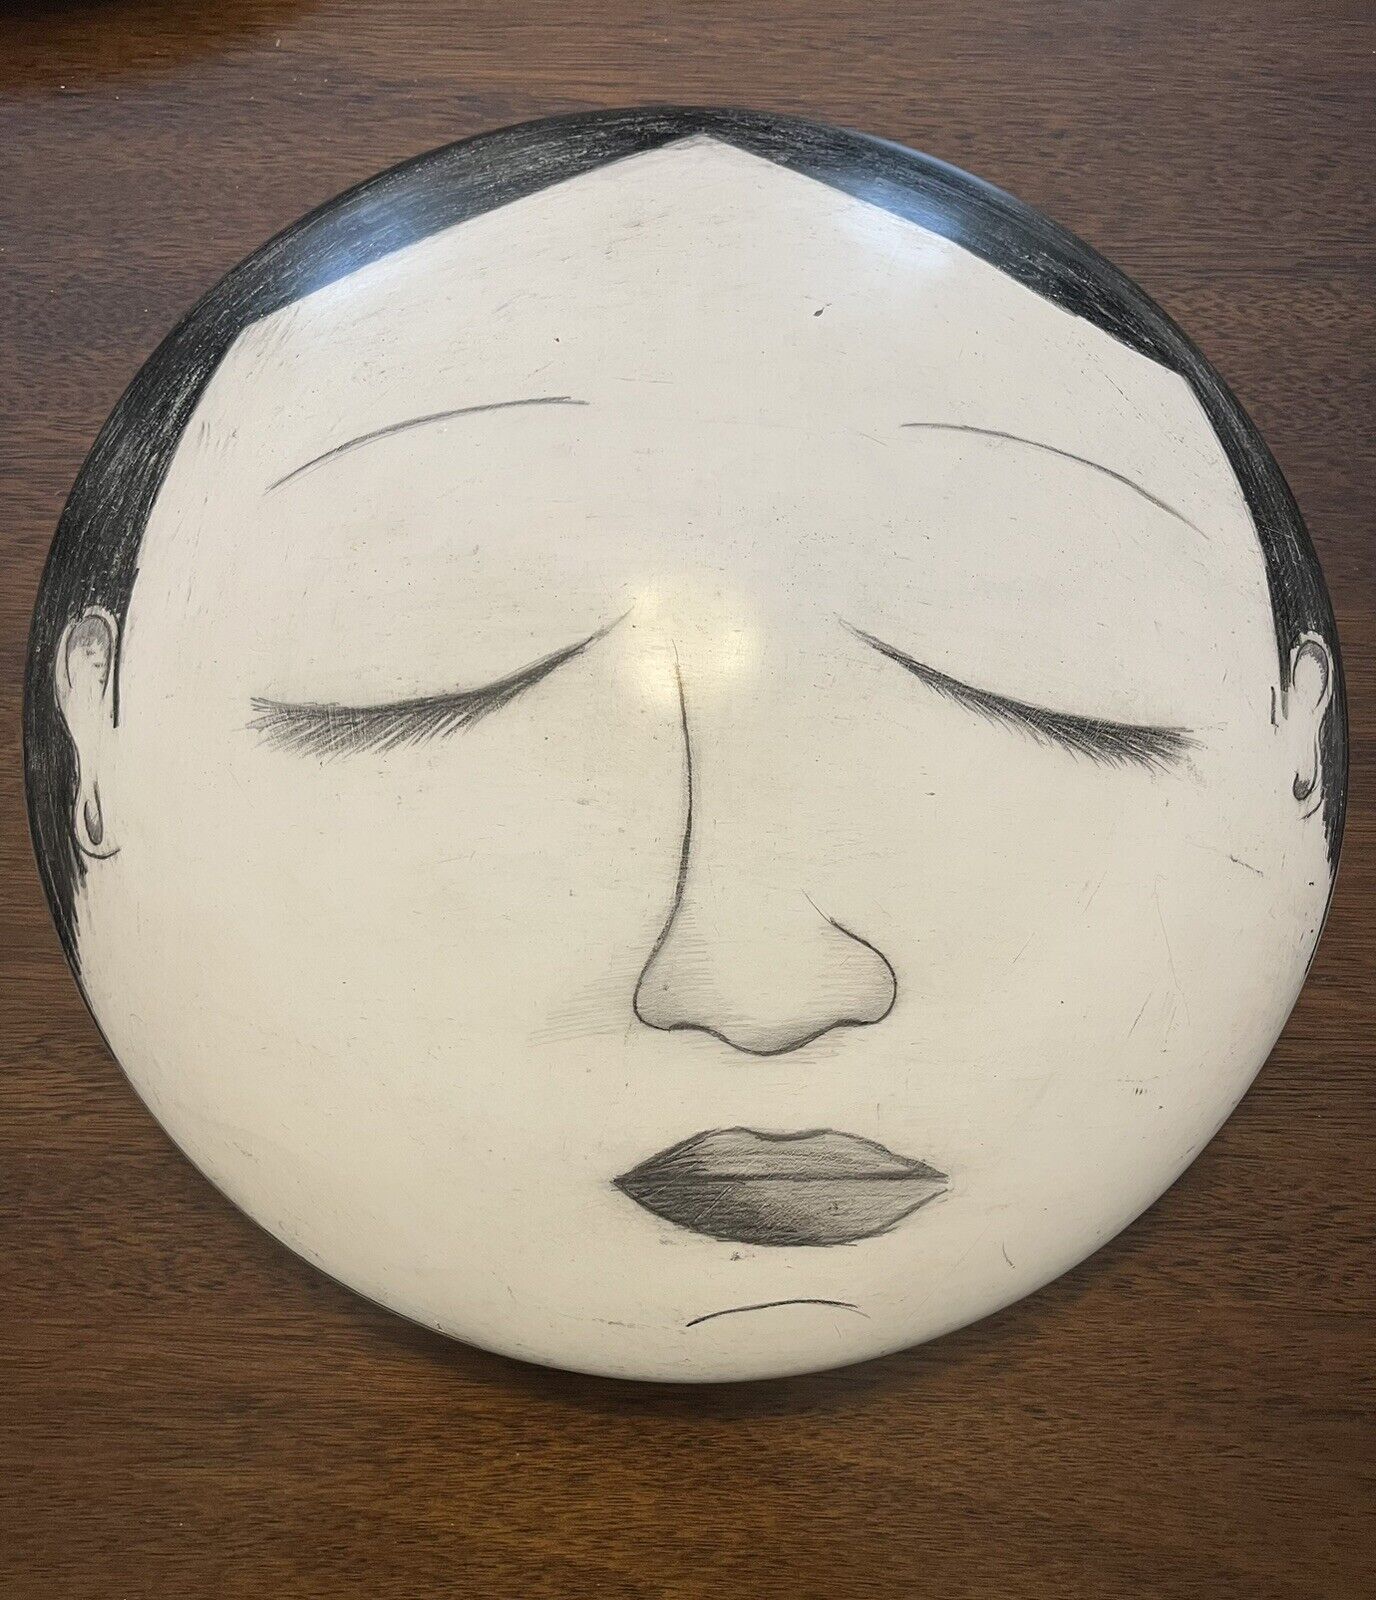 Yuri Zatarain Style Ceramic Face Sculpture Wall Decor - 16”